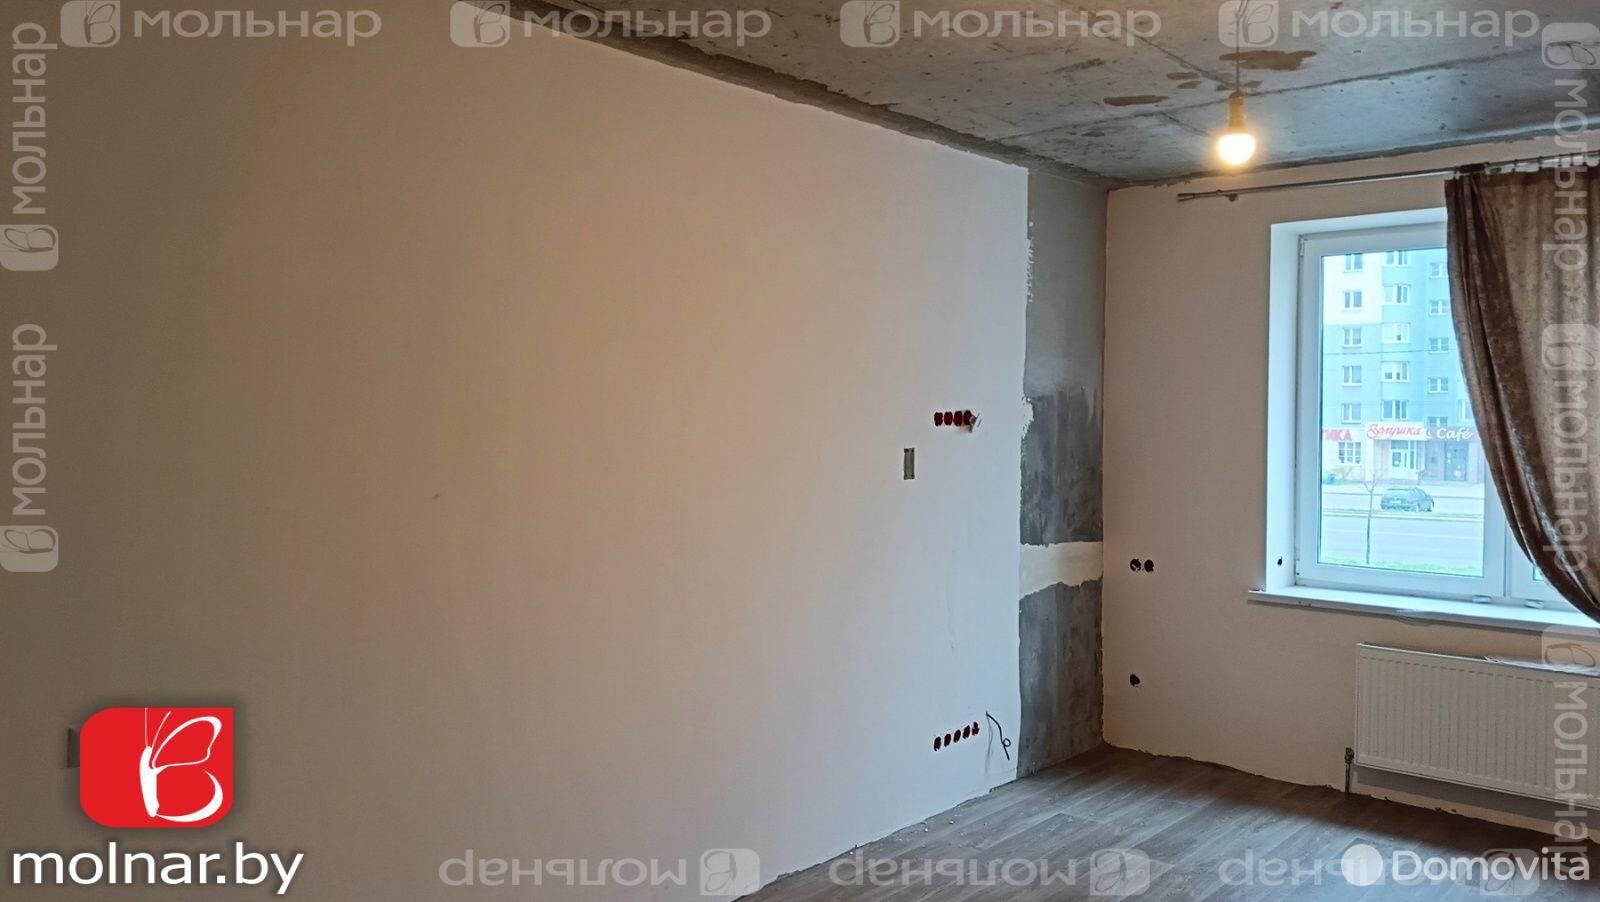 Стоимость продажи квартиры, Минск, Игуменский тр-т, д. 15